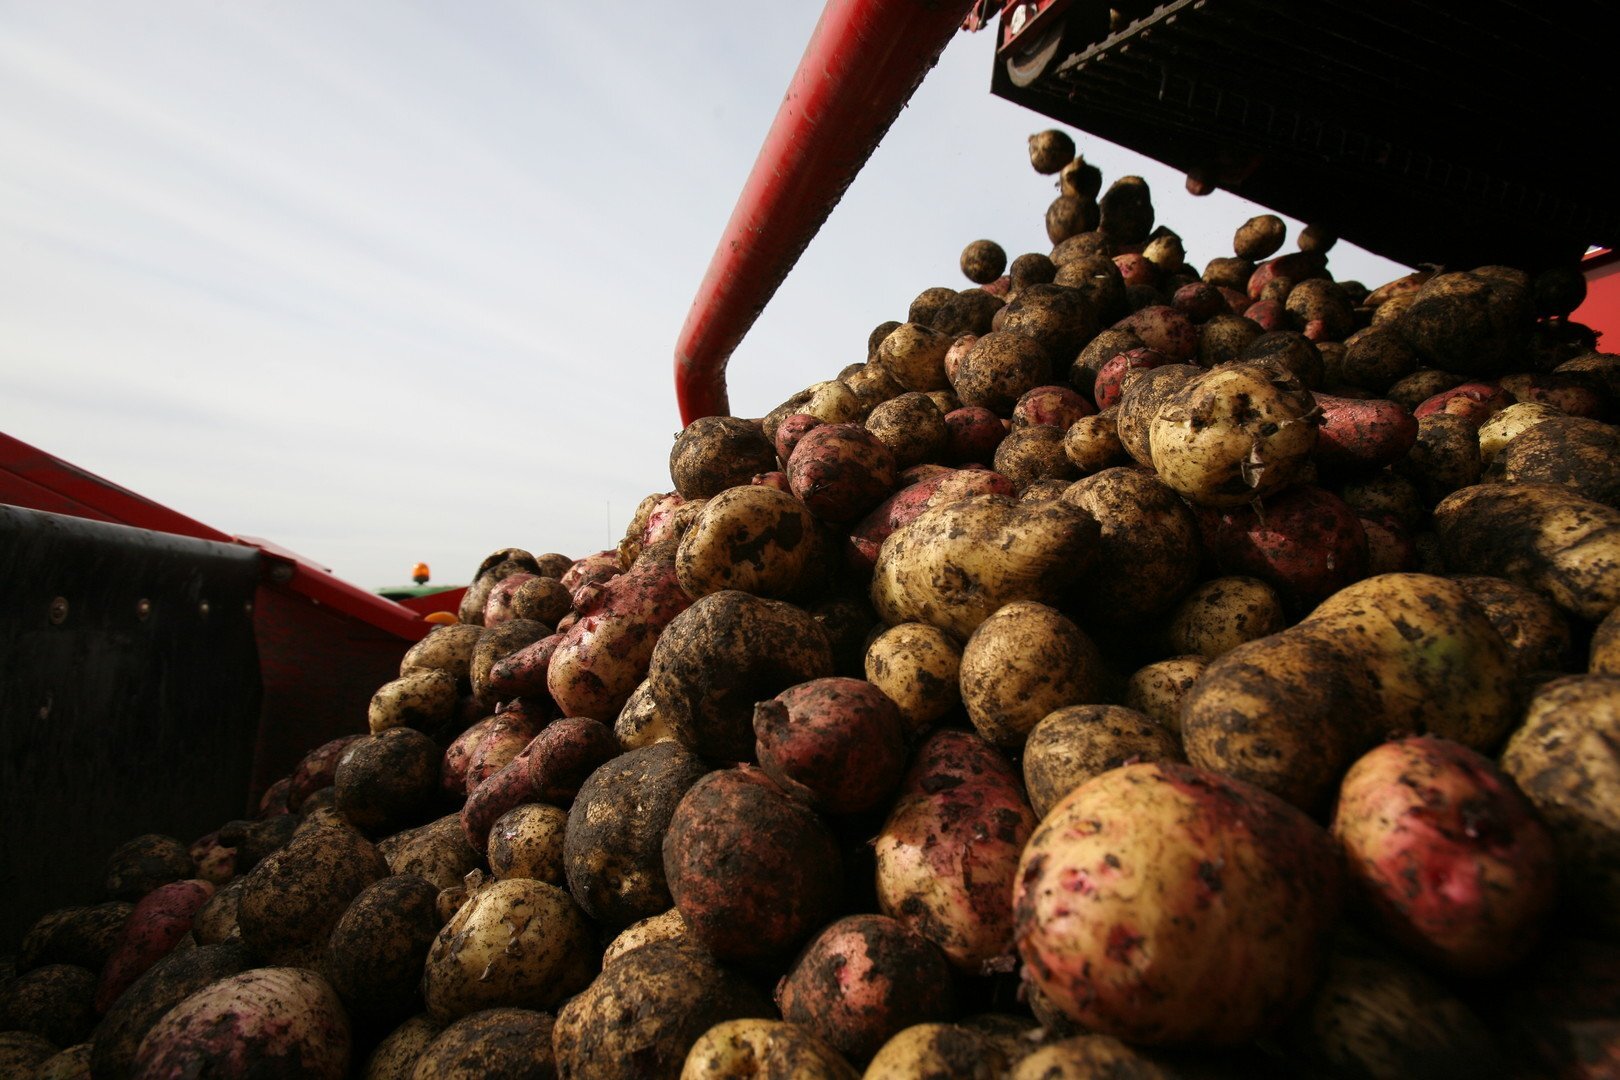 مصر.. إيقاف شركات عن تصدير البطاطا لروسيا وأوروبا